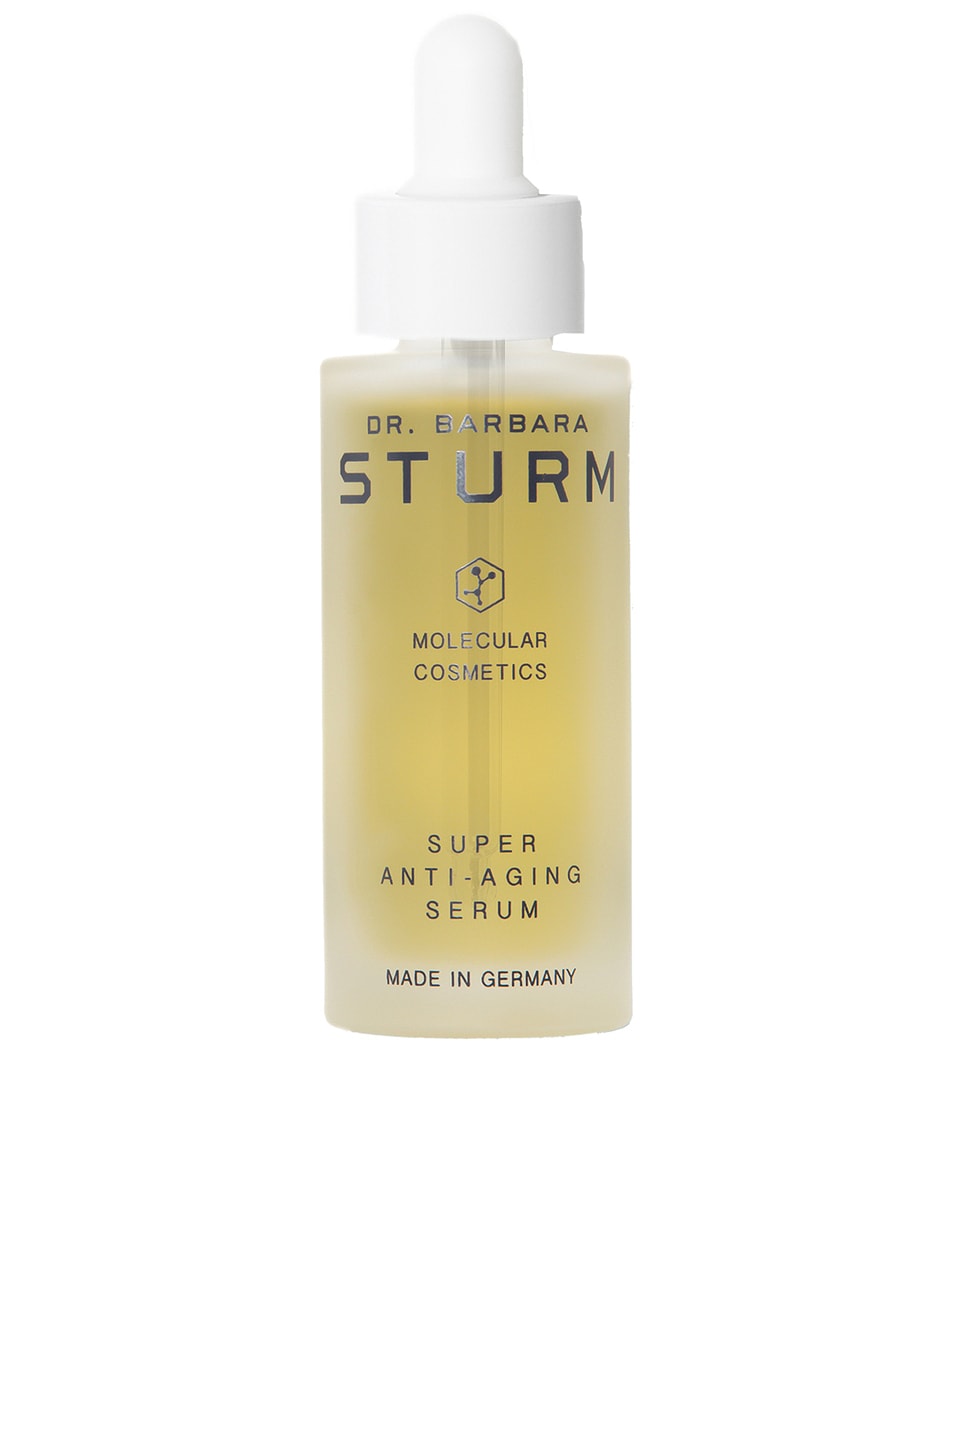 Dr. Barbara Sturm Super Anti-aging Serum, 30 ml In N,a